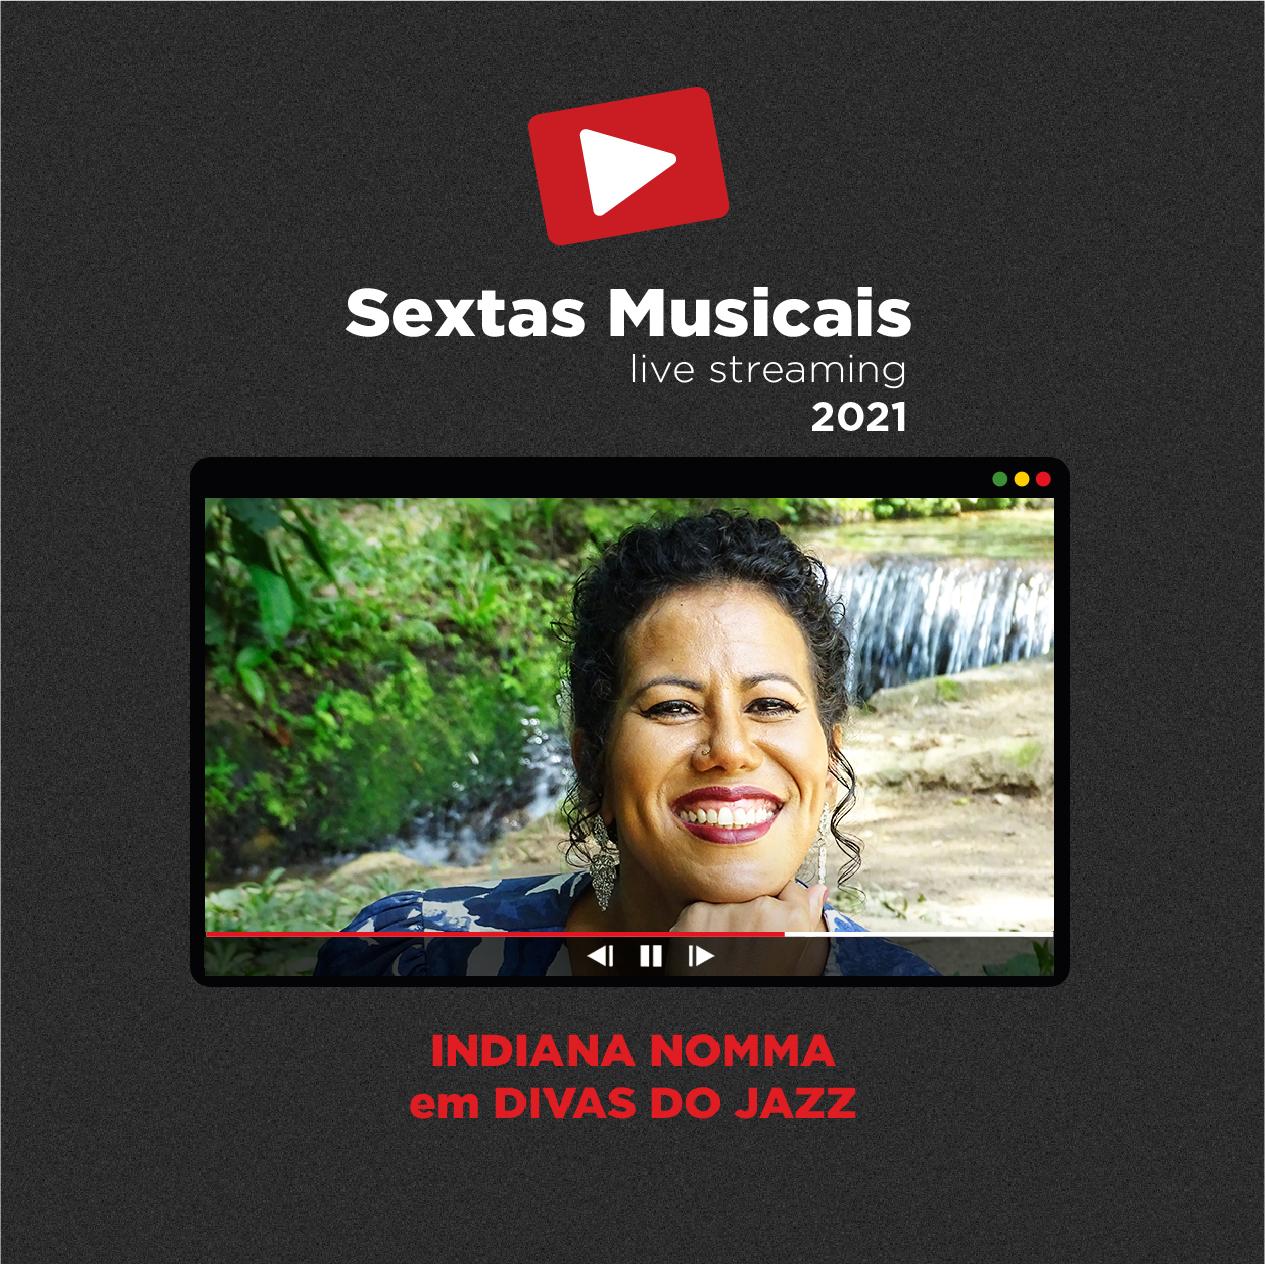 Sextas Musicais - Live streaming: Indiana Nomma em Divas do Jazz